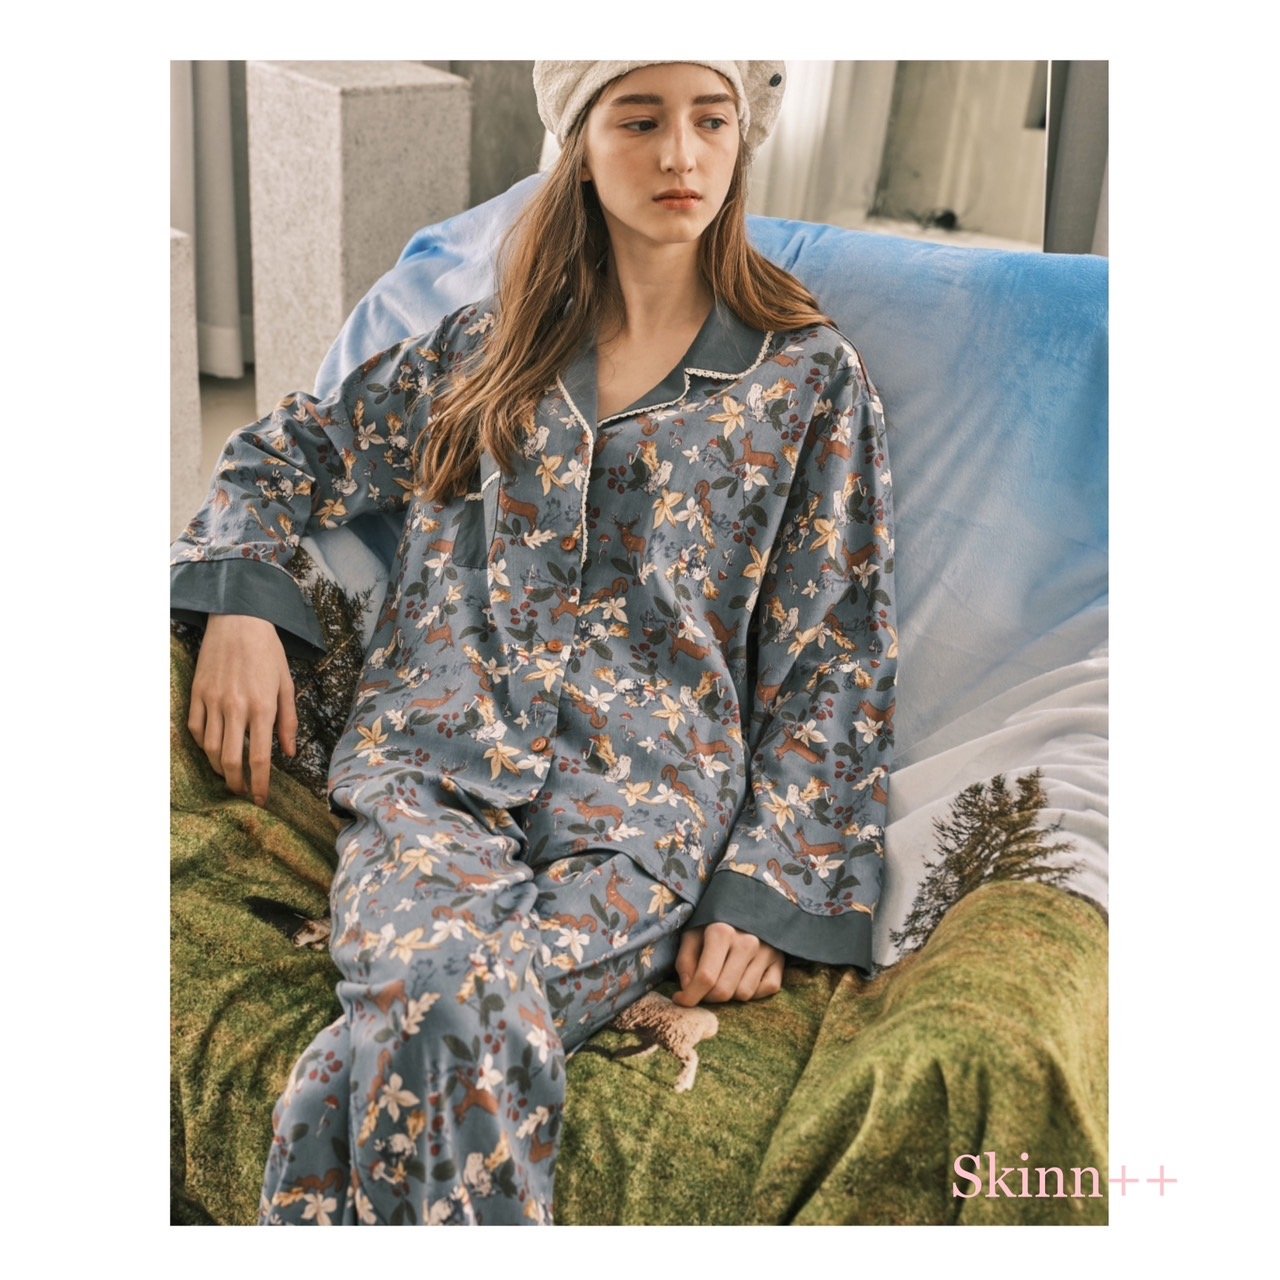 เซตชุดนอนพร้อมซับใน รุ่น Dark Blue Floral Prints Loungewear Set